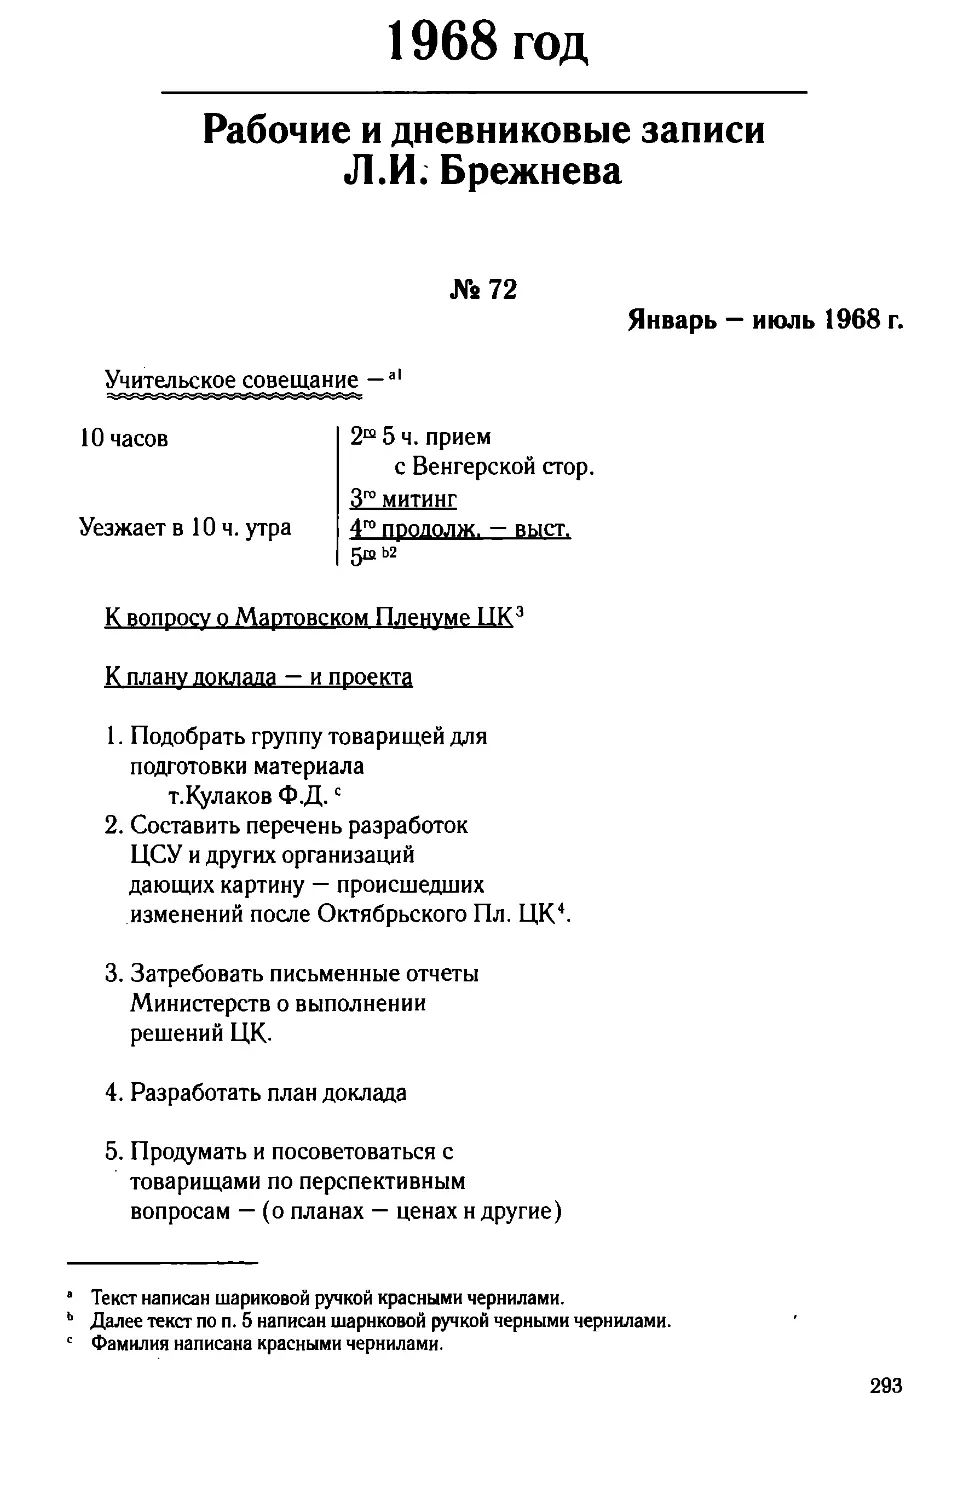 Рабочие и дневниковые записи Л.И. Брежнева. 1968 год